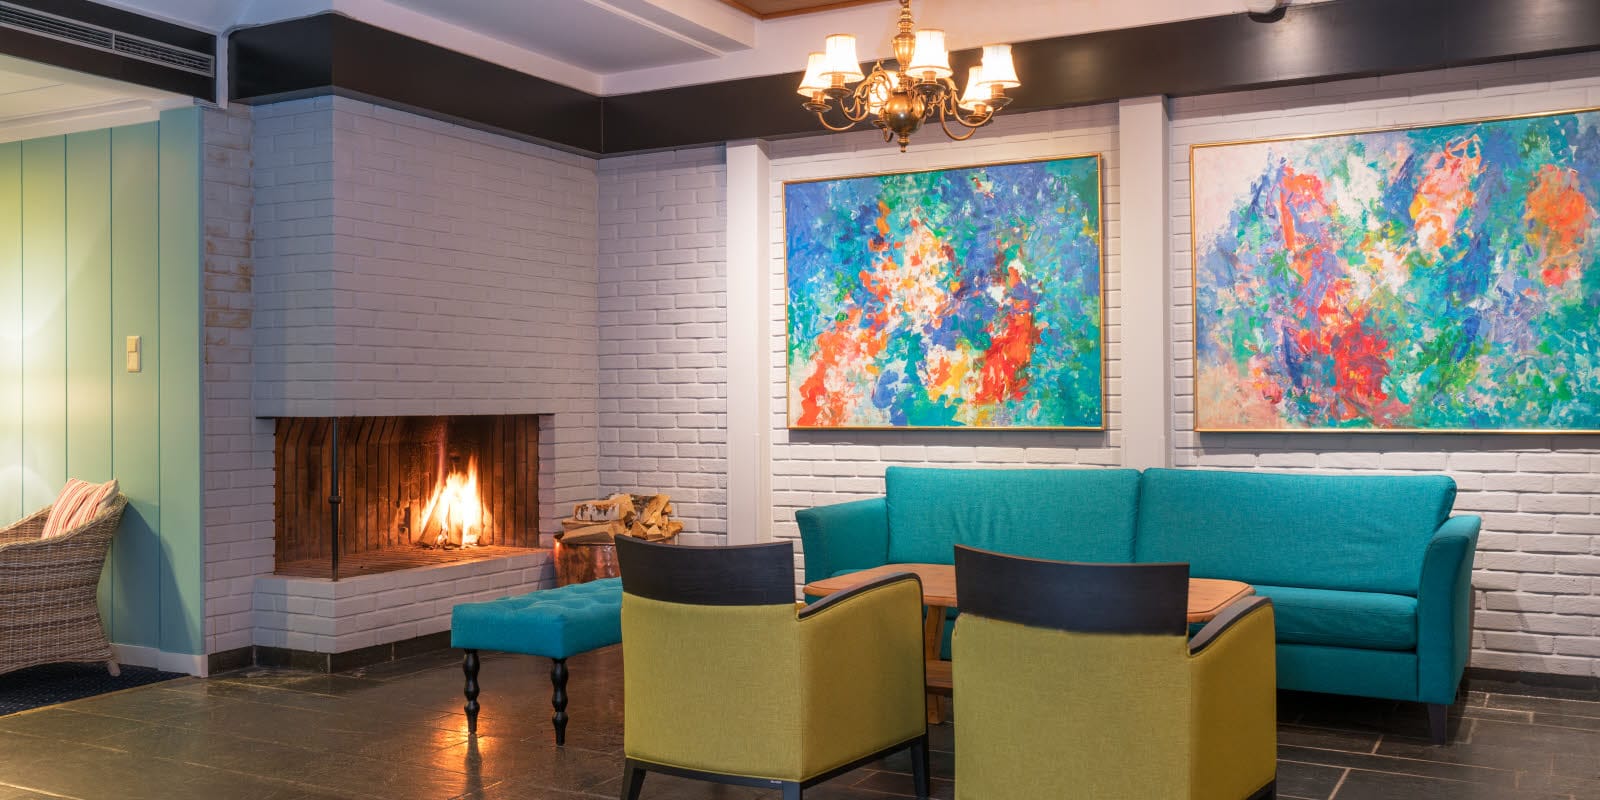 Lobby met een zithoek in frisse kleuren, open haard en kunstwerken aan de muren van Thon Hotel Skeikampen